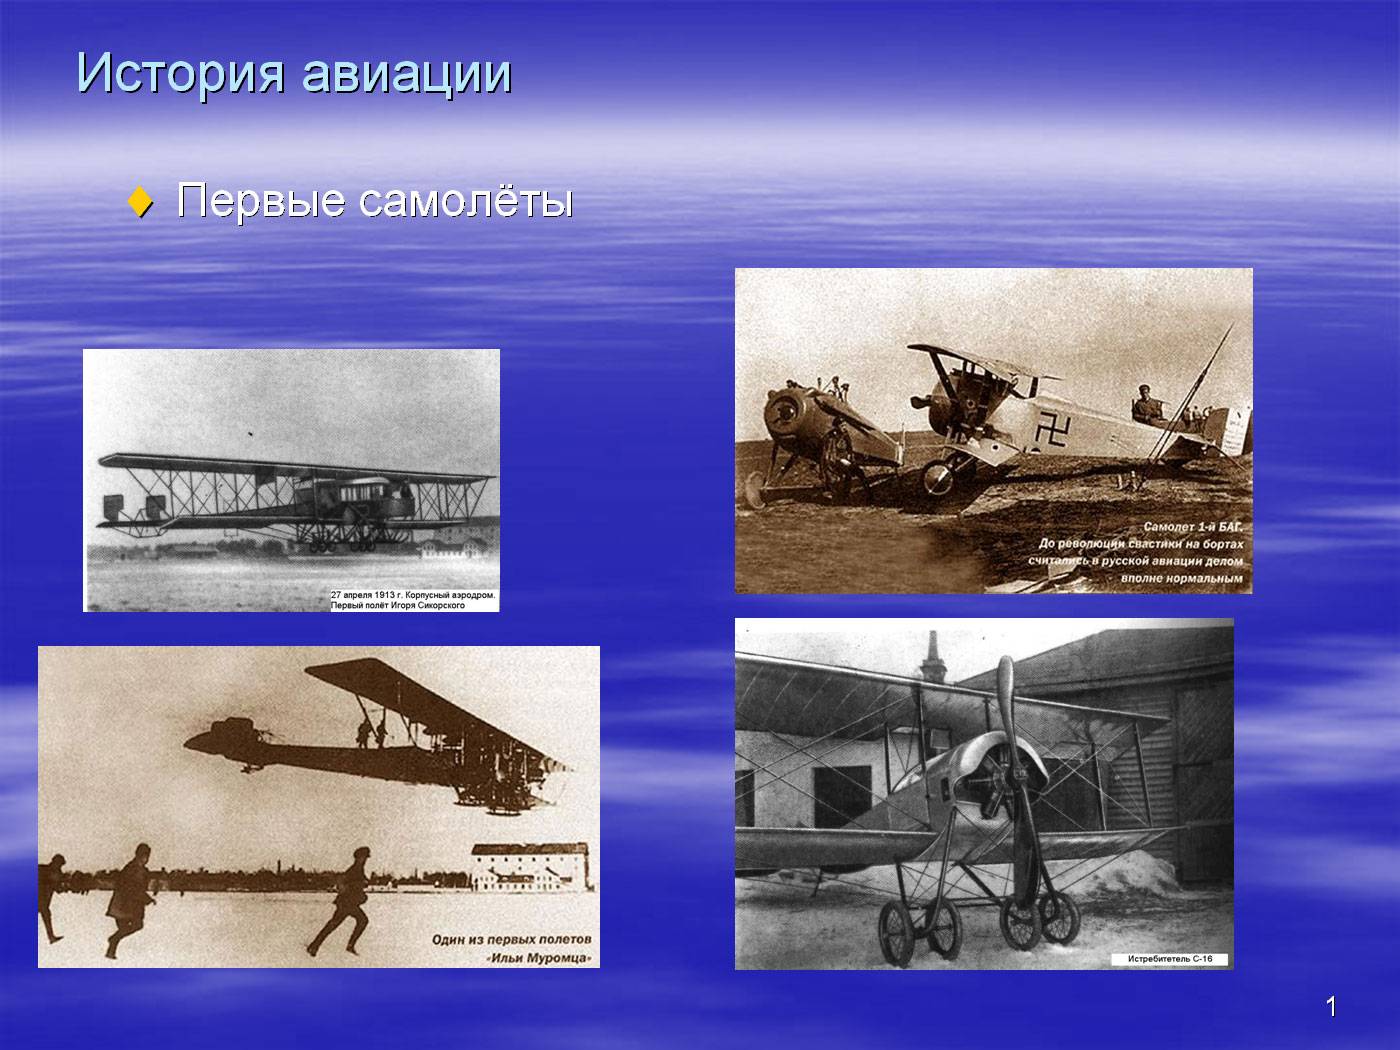 Когда появились первые самолеты. История авиации. Первый самолет. Презентация на тему самолеты. История развития авиации.